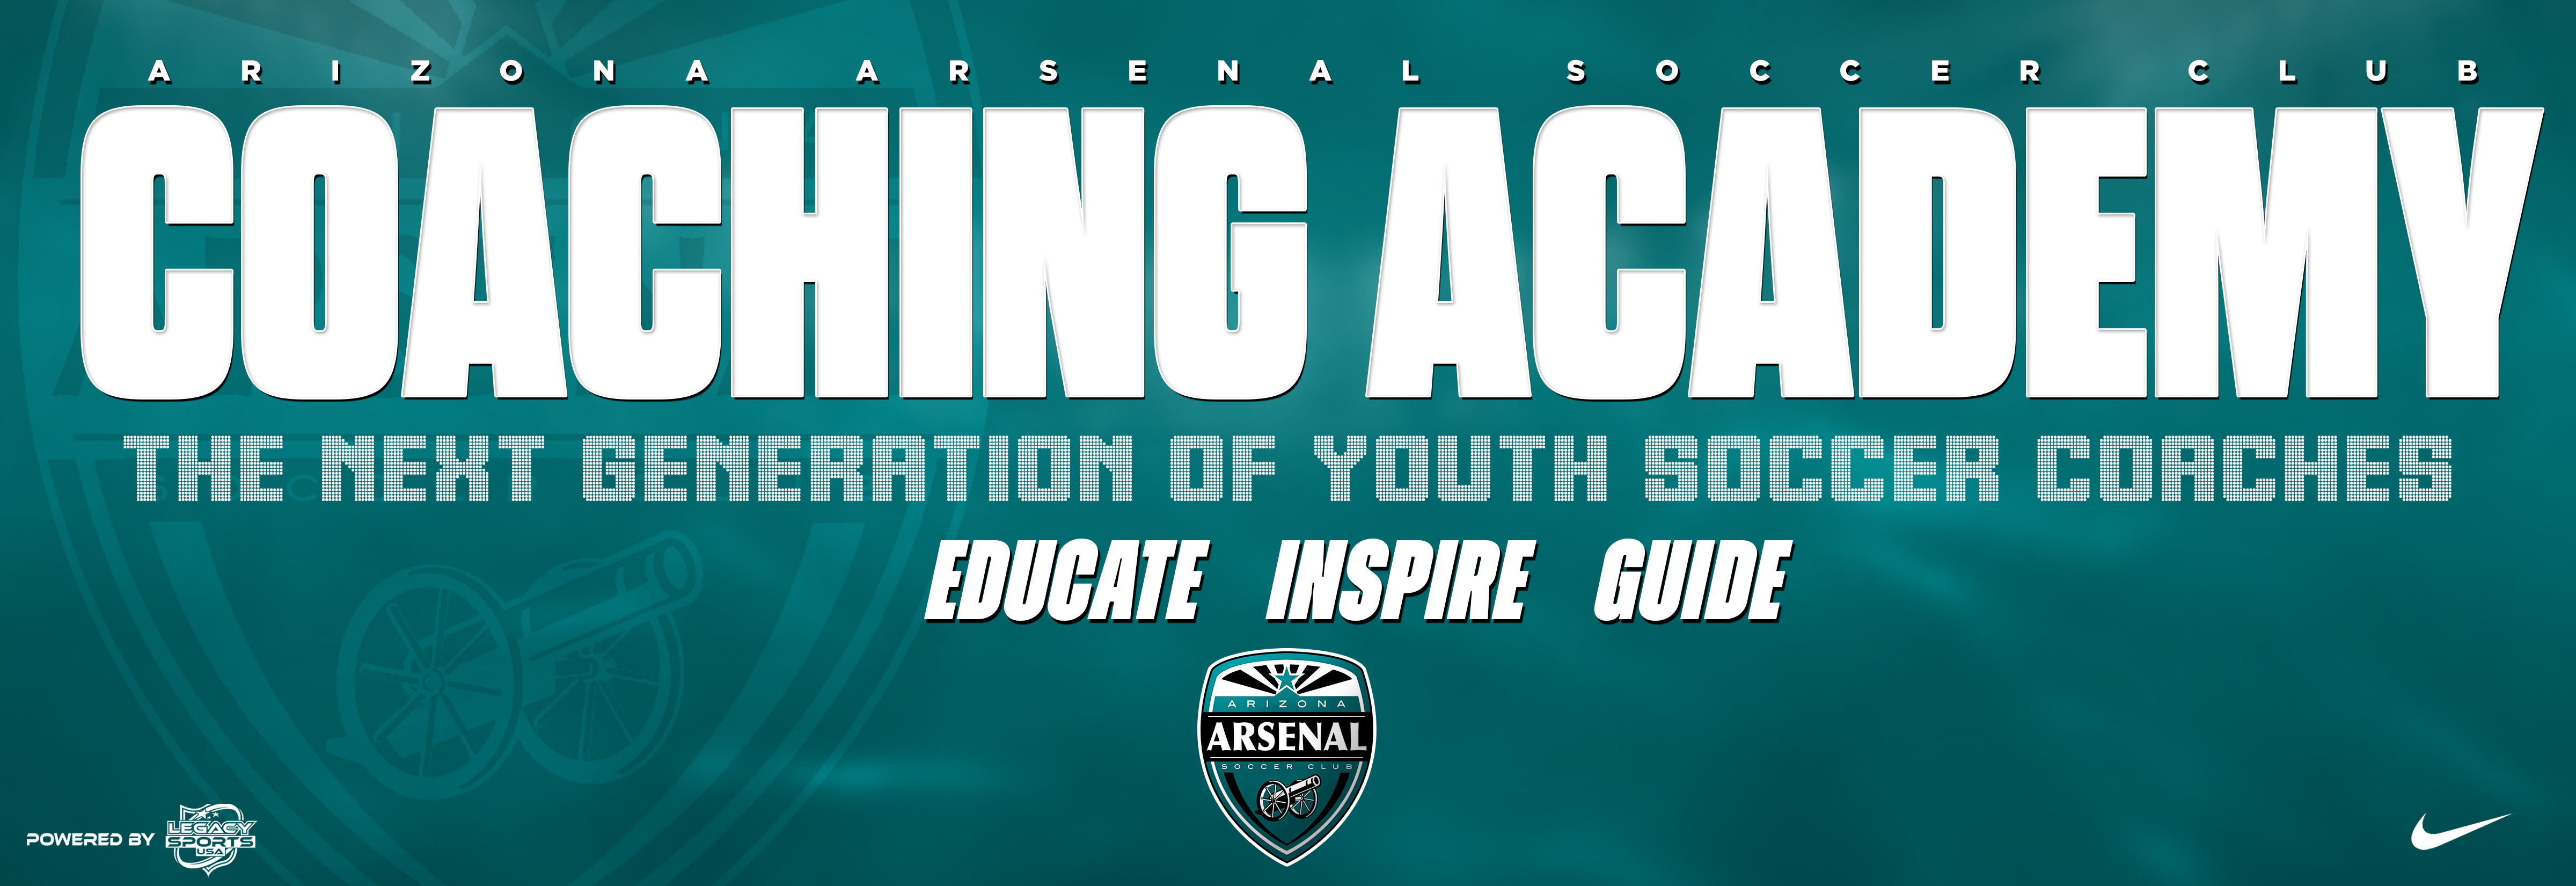 Arsenal Coaching Academy